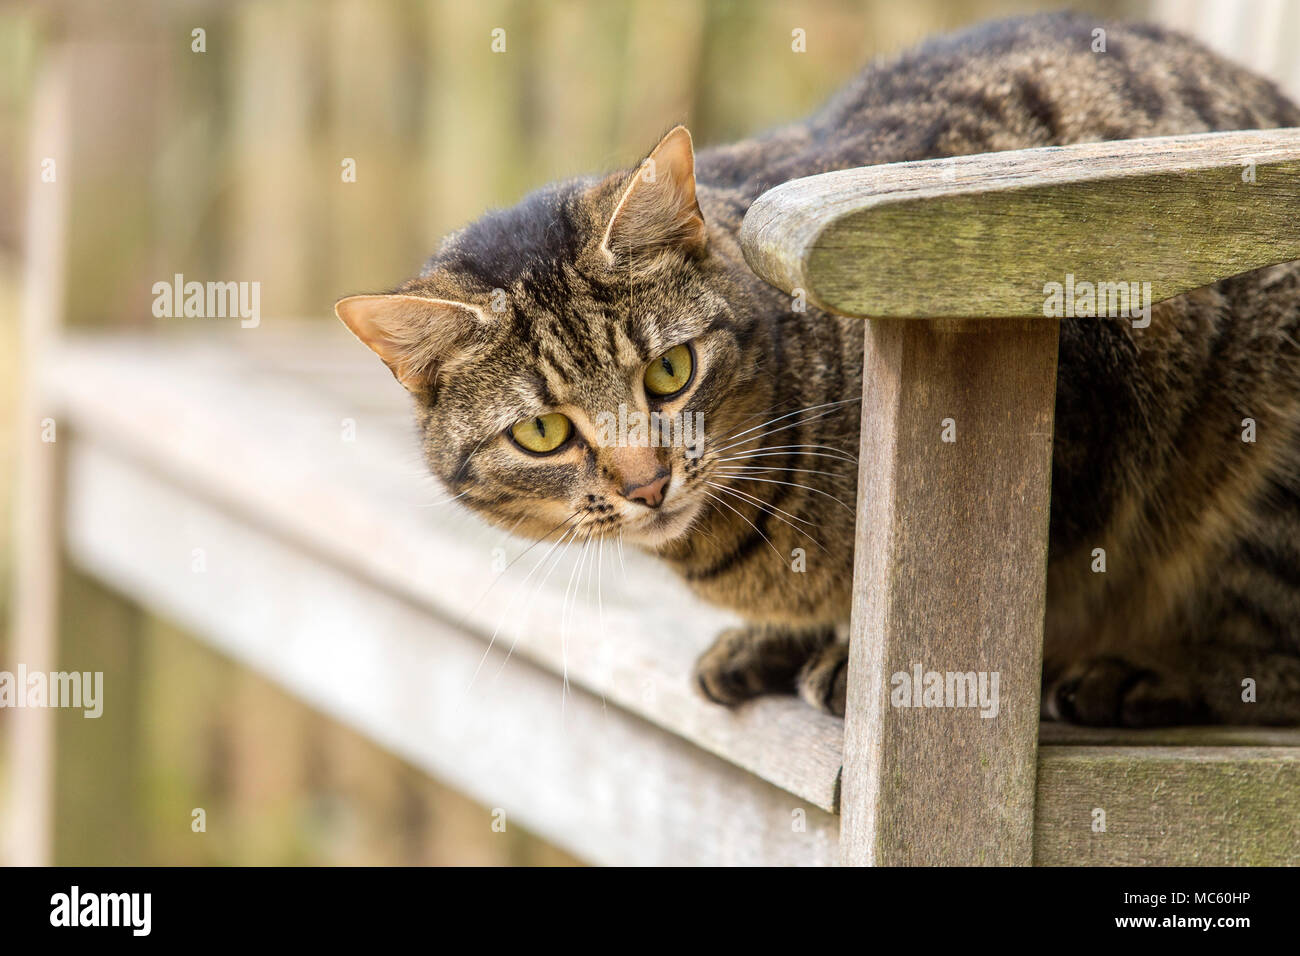 Los jóvenes gato atigrado, Bengala gato sentado afuera en un banco de jardín Foto de stock